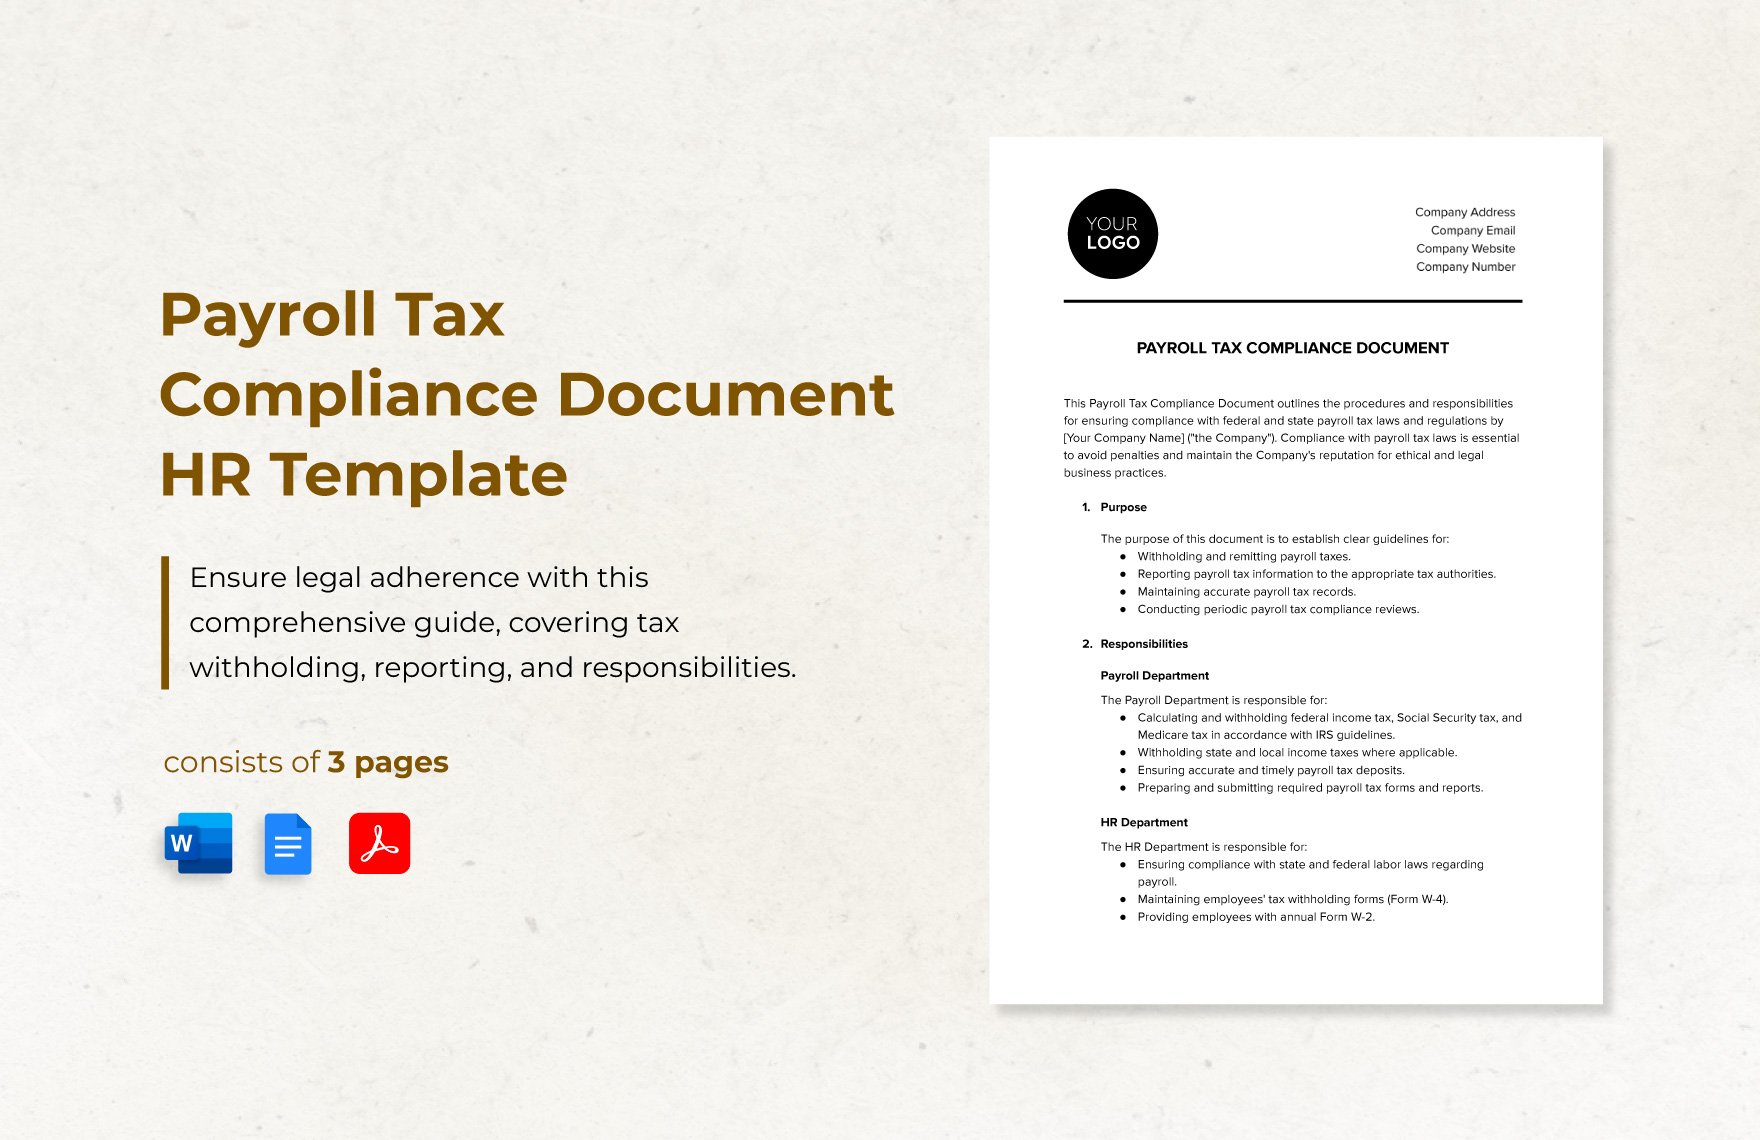 Payroll Tax Compliance Document HR Template